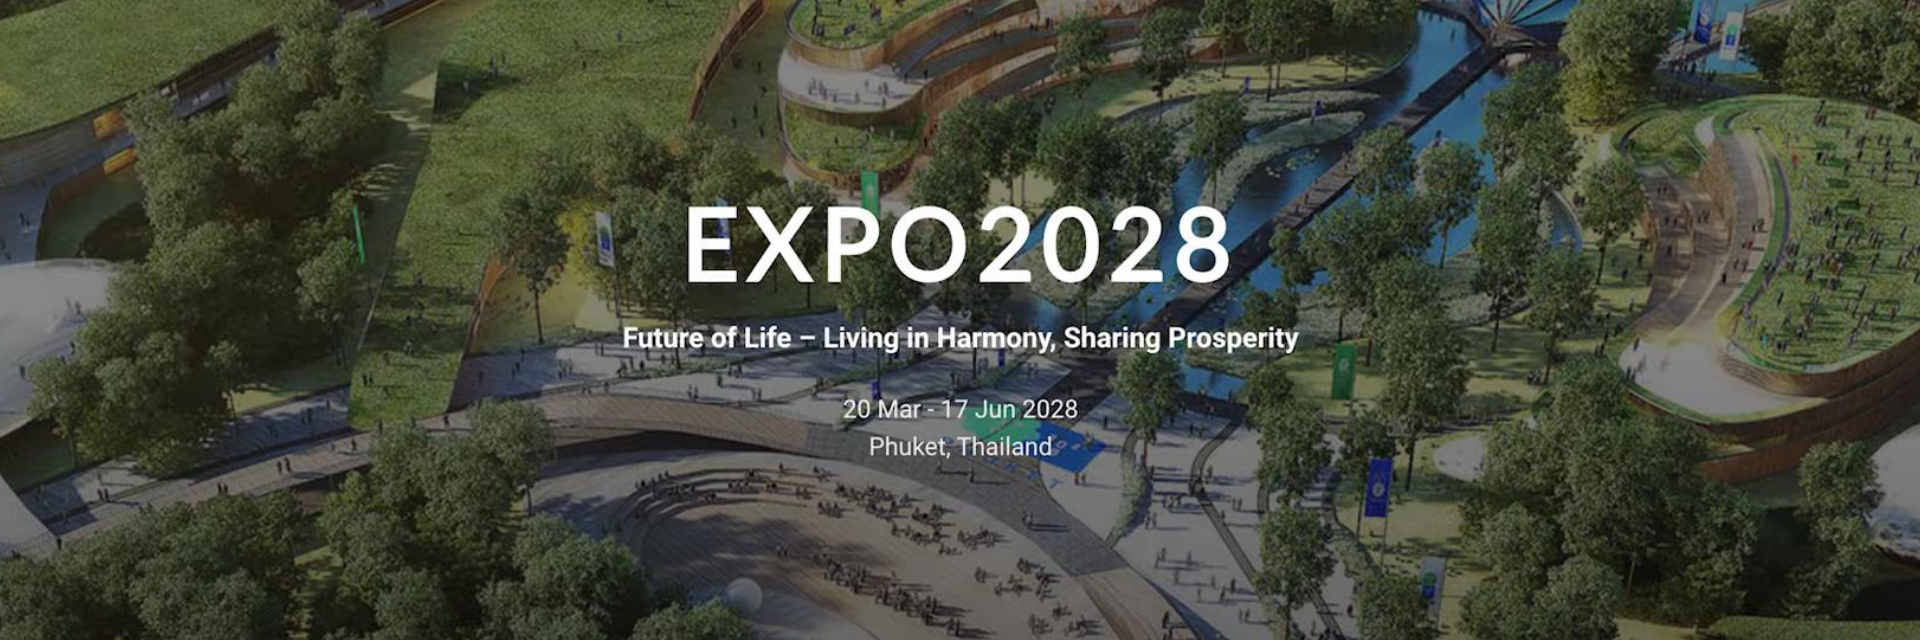 The road to Expo 2028 Phuket Thailand